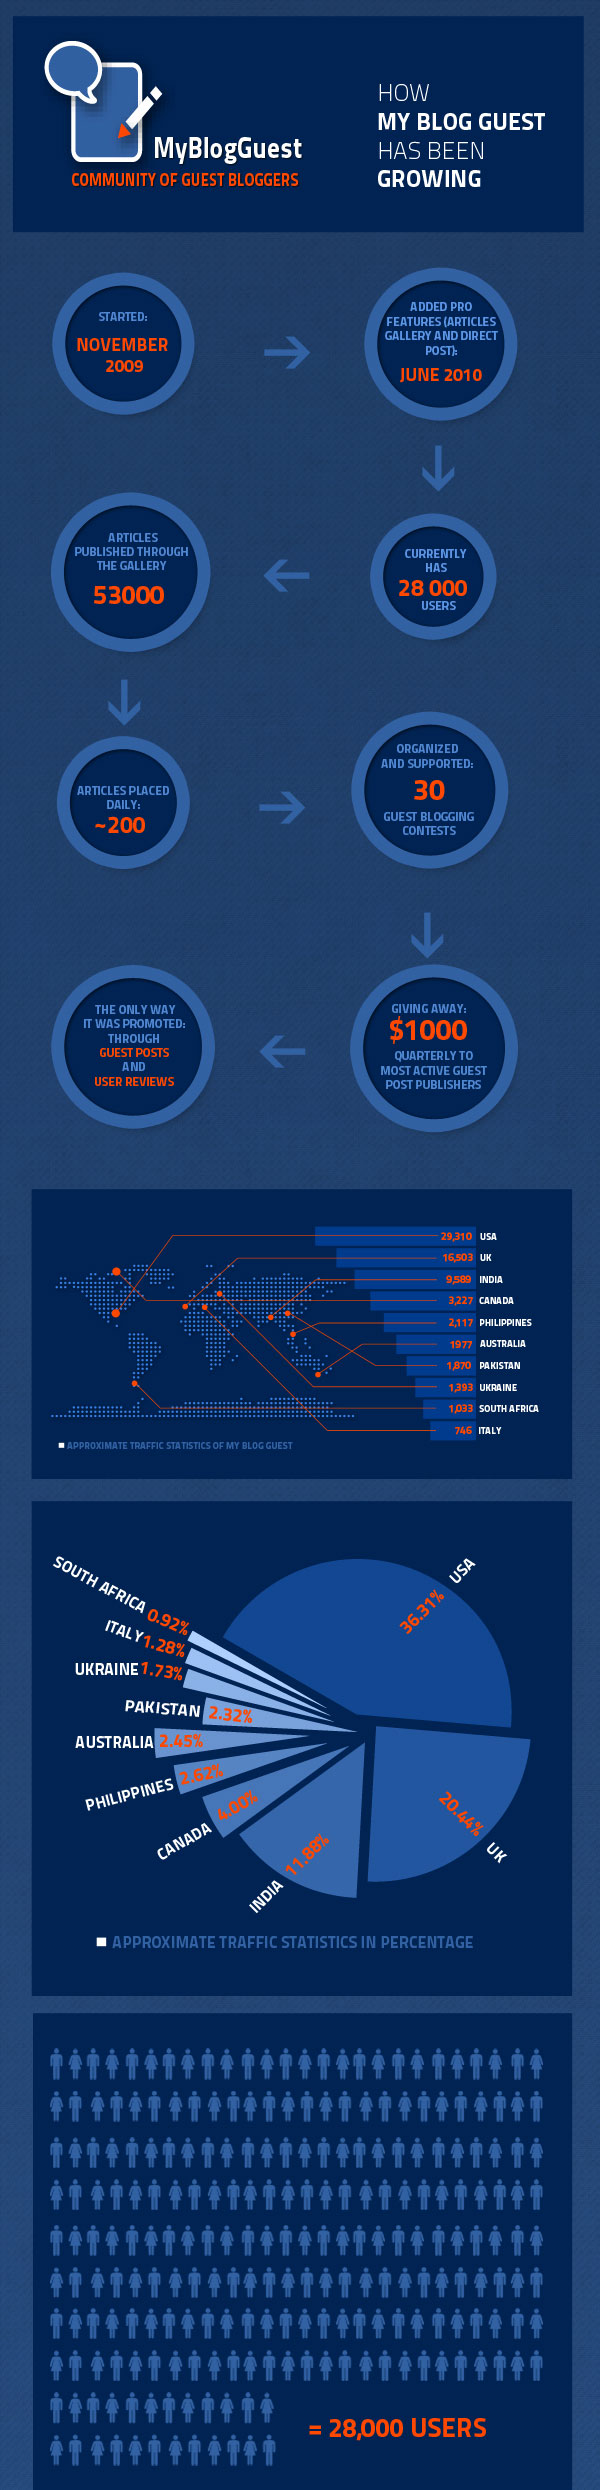 myblogguest-infographic